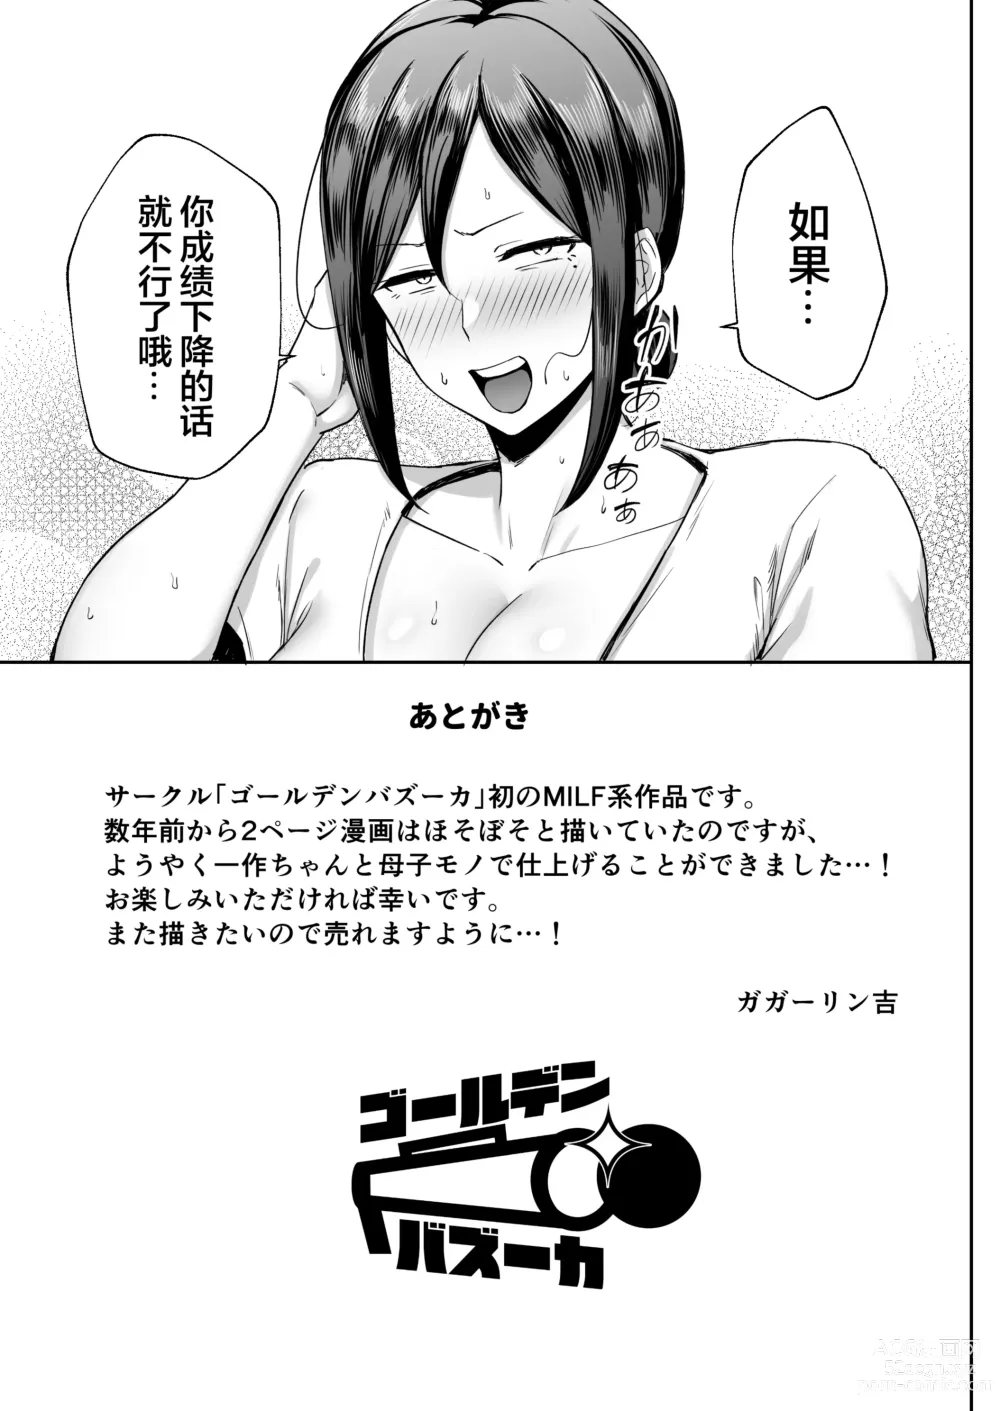 Page 47 of manga [Golden Bazooka (Gagarin Yoshi) Ichiban Mimoto de Eroi Mesuki ~ Haha Dakedo, Shiko Saru Musuko ni Komatteimasu]